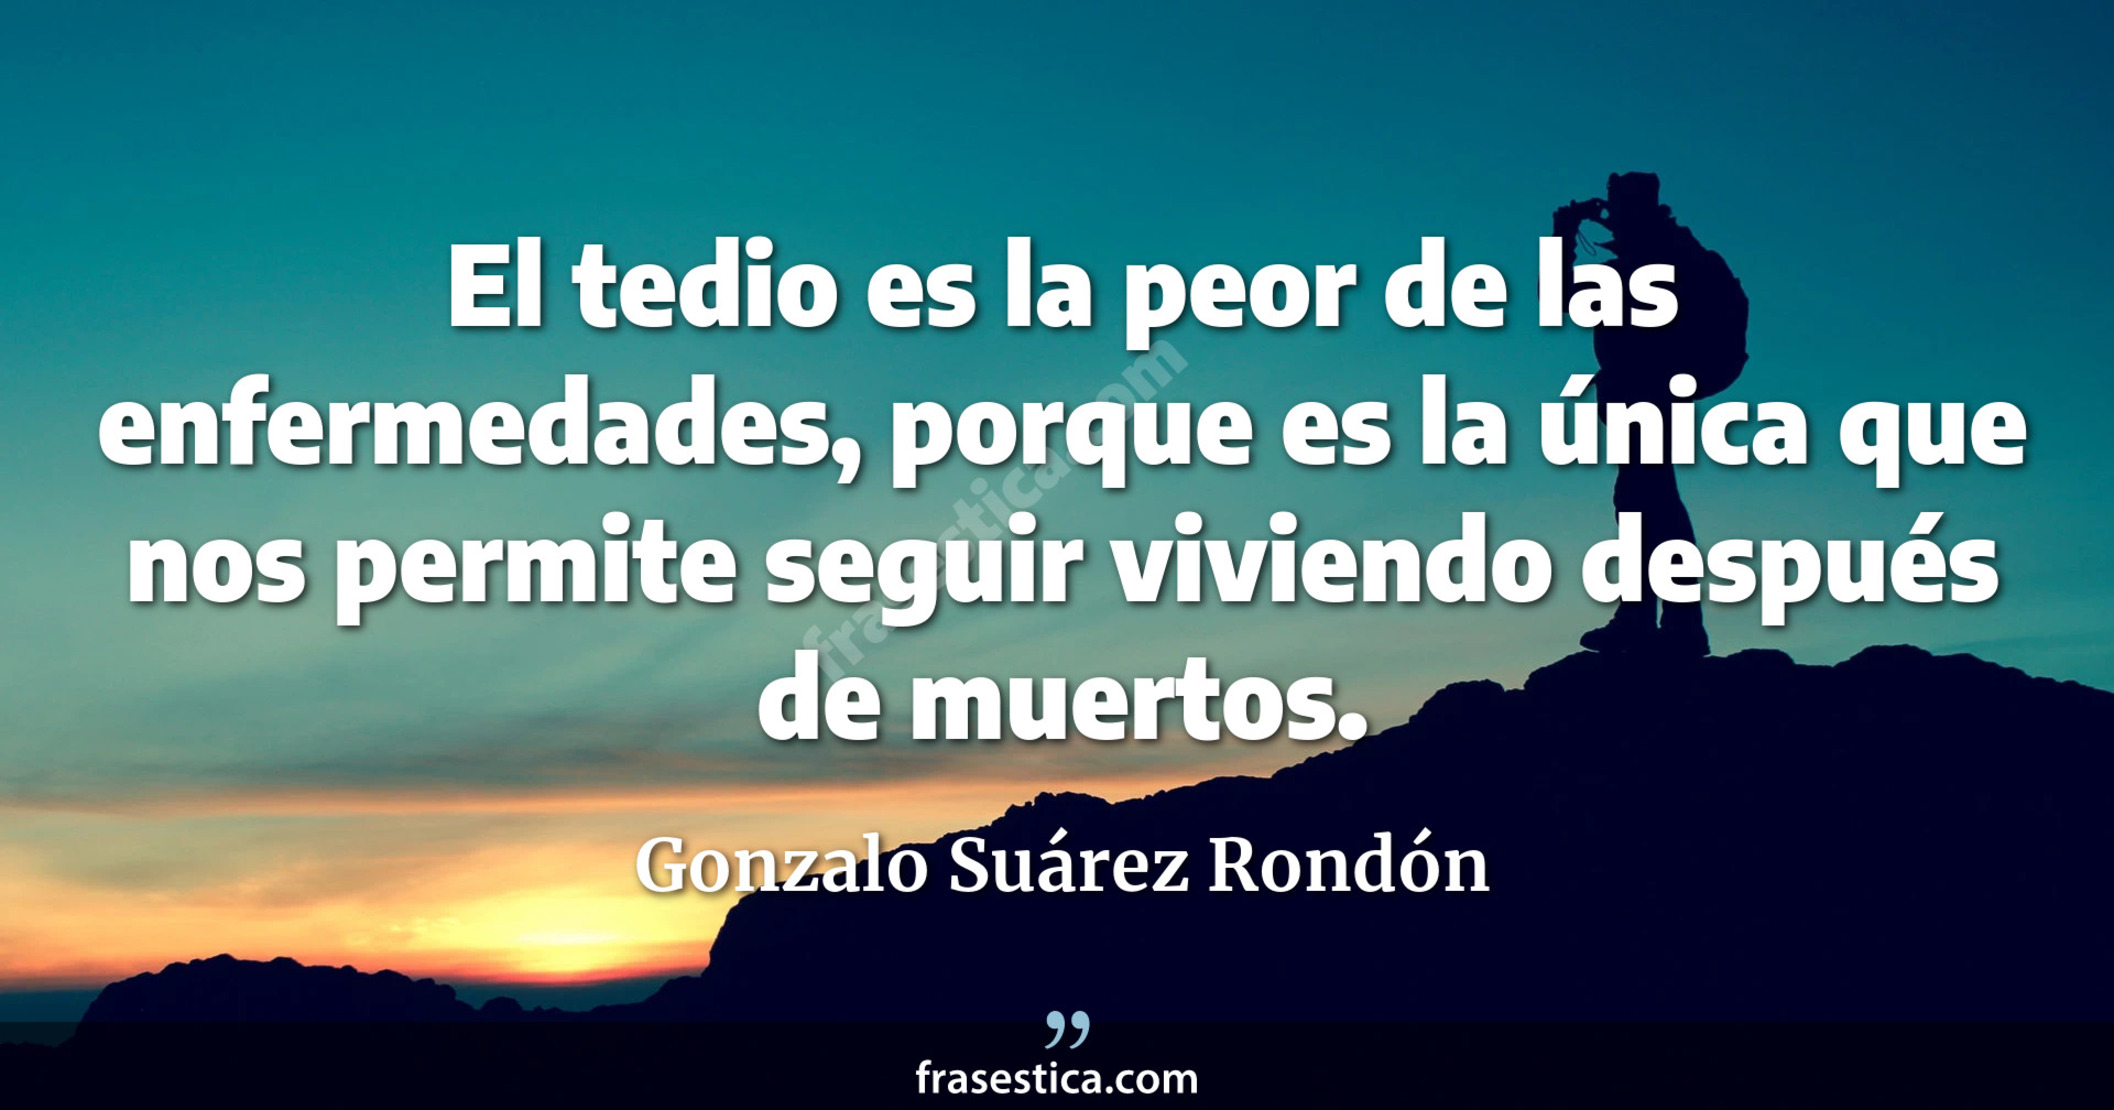 El tedio es la peor de las enfermedades, porque es la única que nos permite seguir viviendo después de muertos. - Gonzalo Suárez Rondón